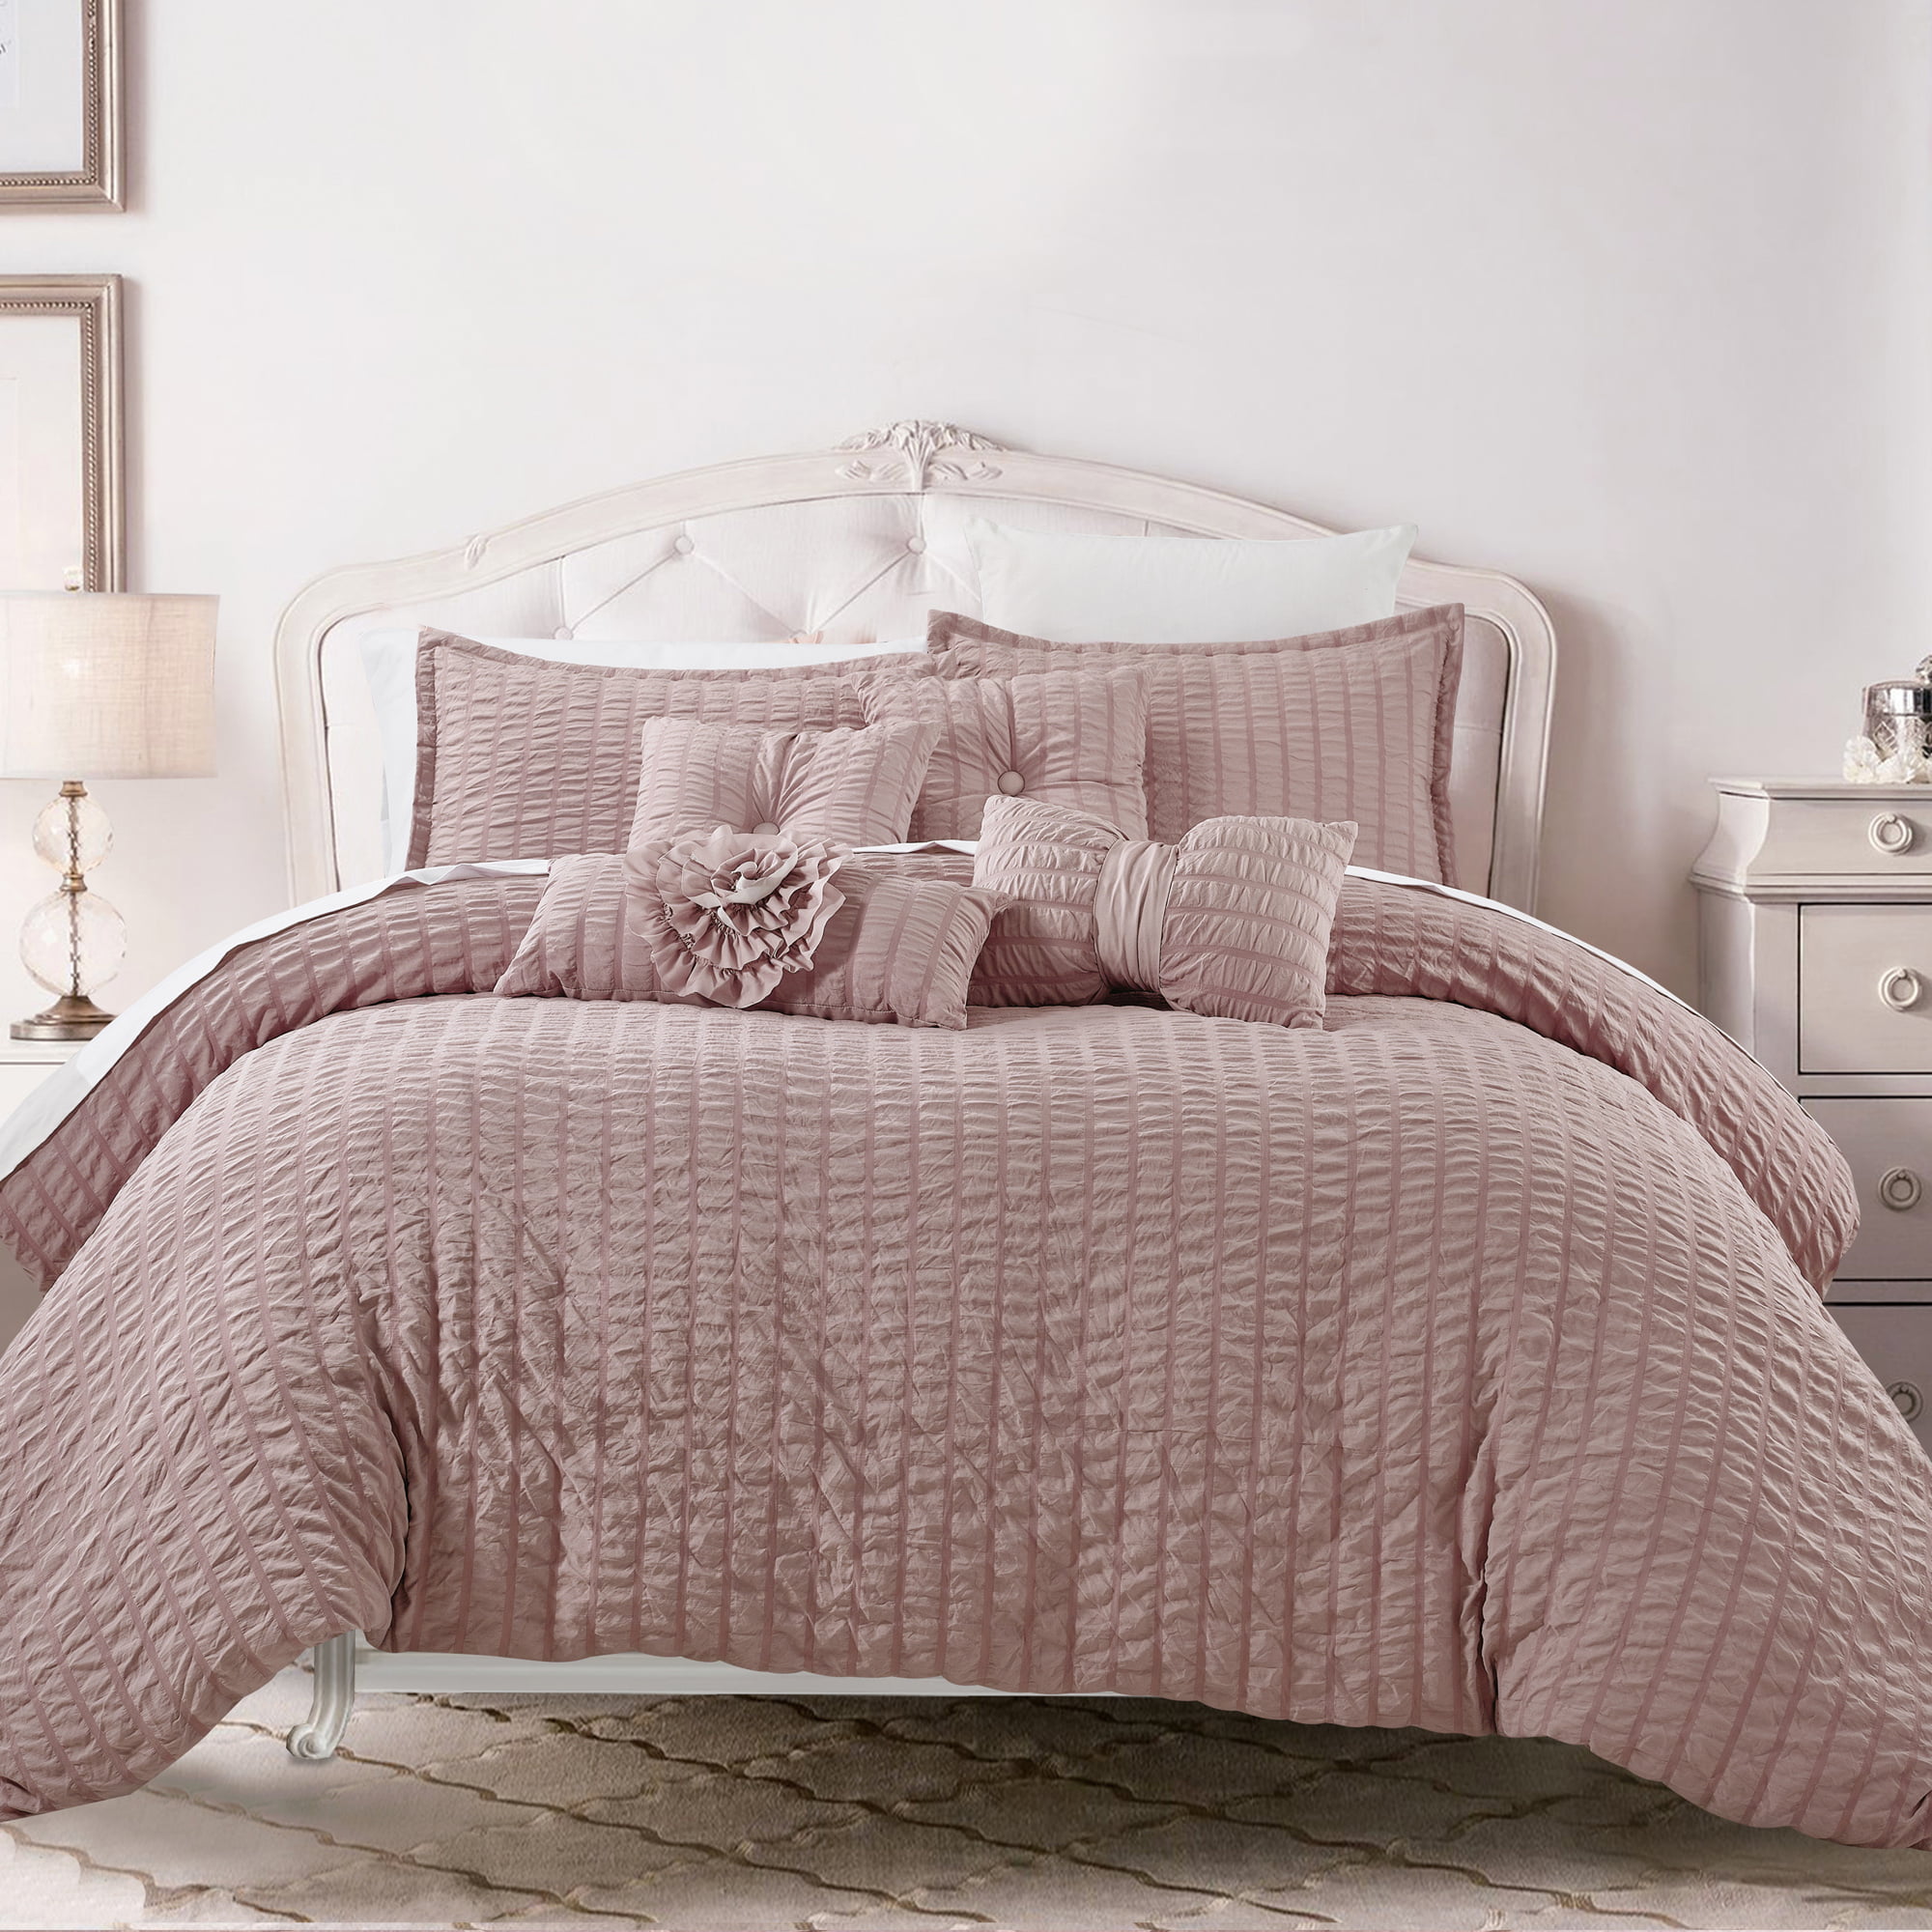 Hgmart Bedding Comforter Set Bed In A, Luxury King Size Bed Sets